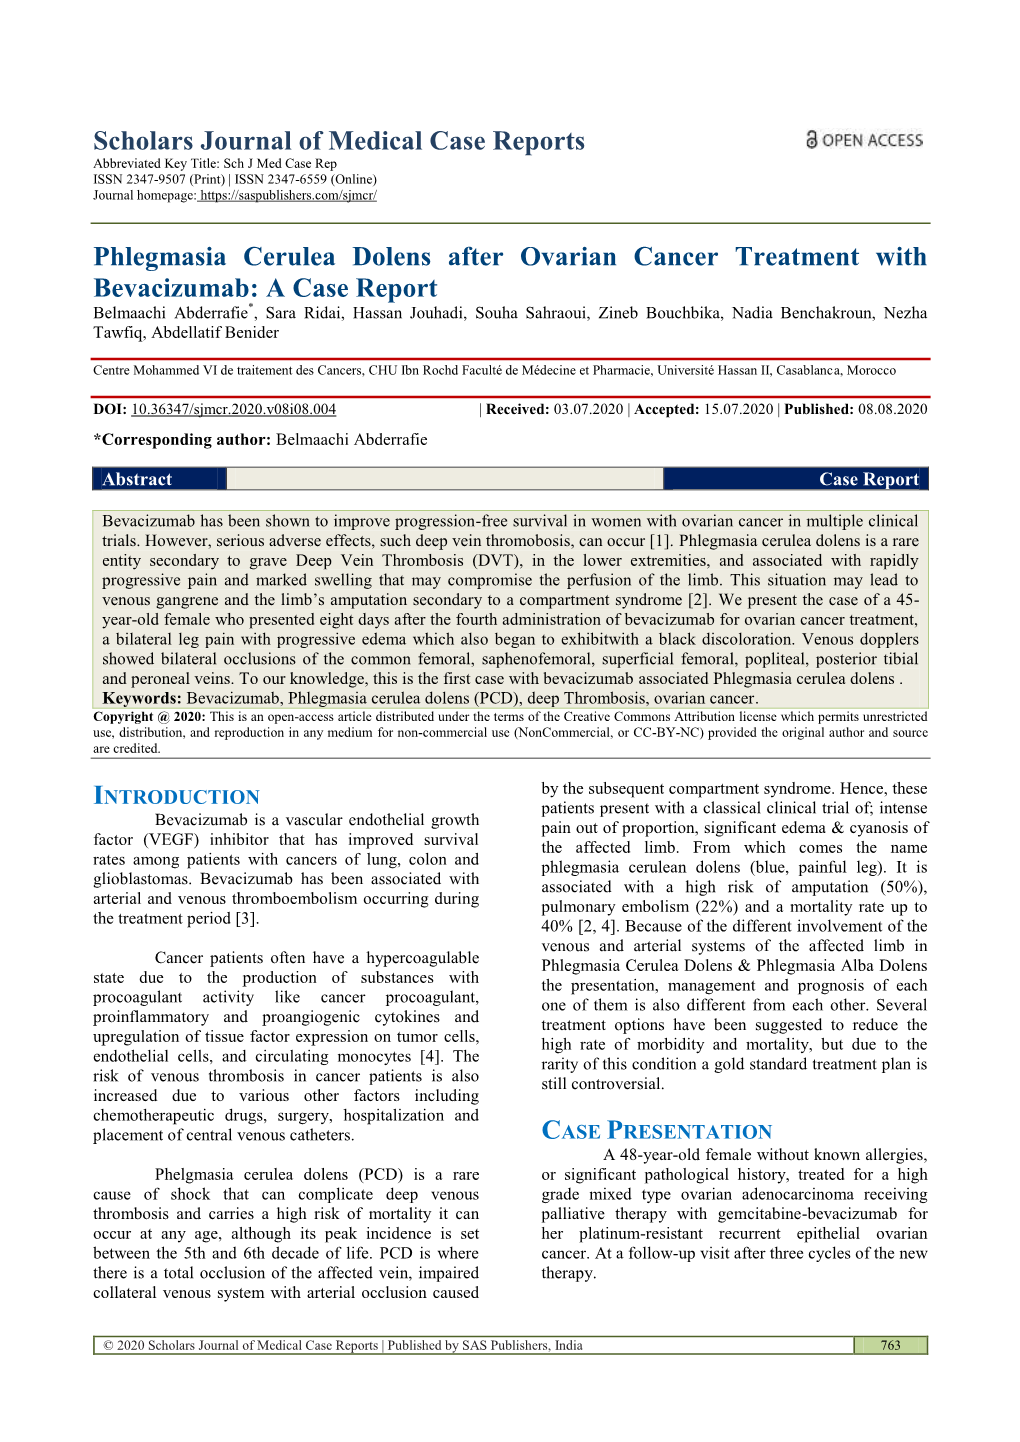 Phlegmasia Cerulea Dolens After Ovarian Cancer